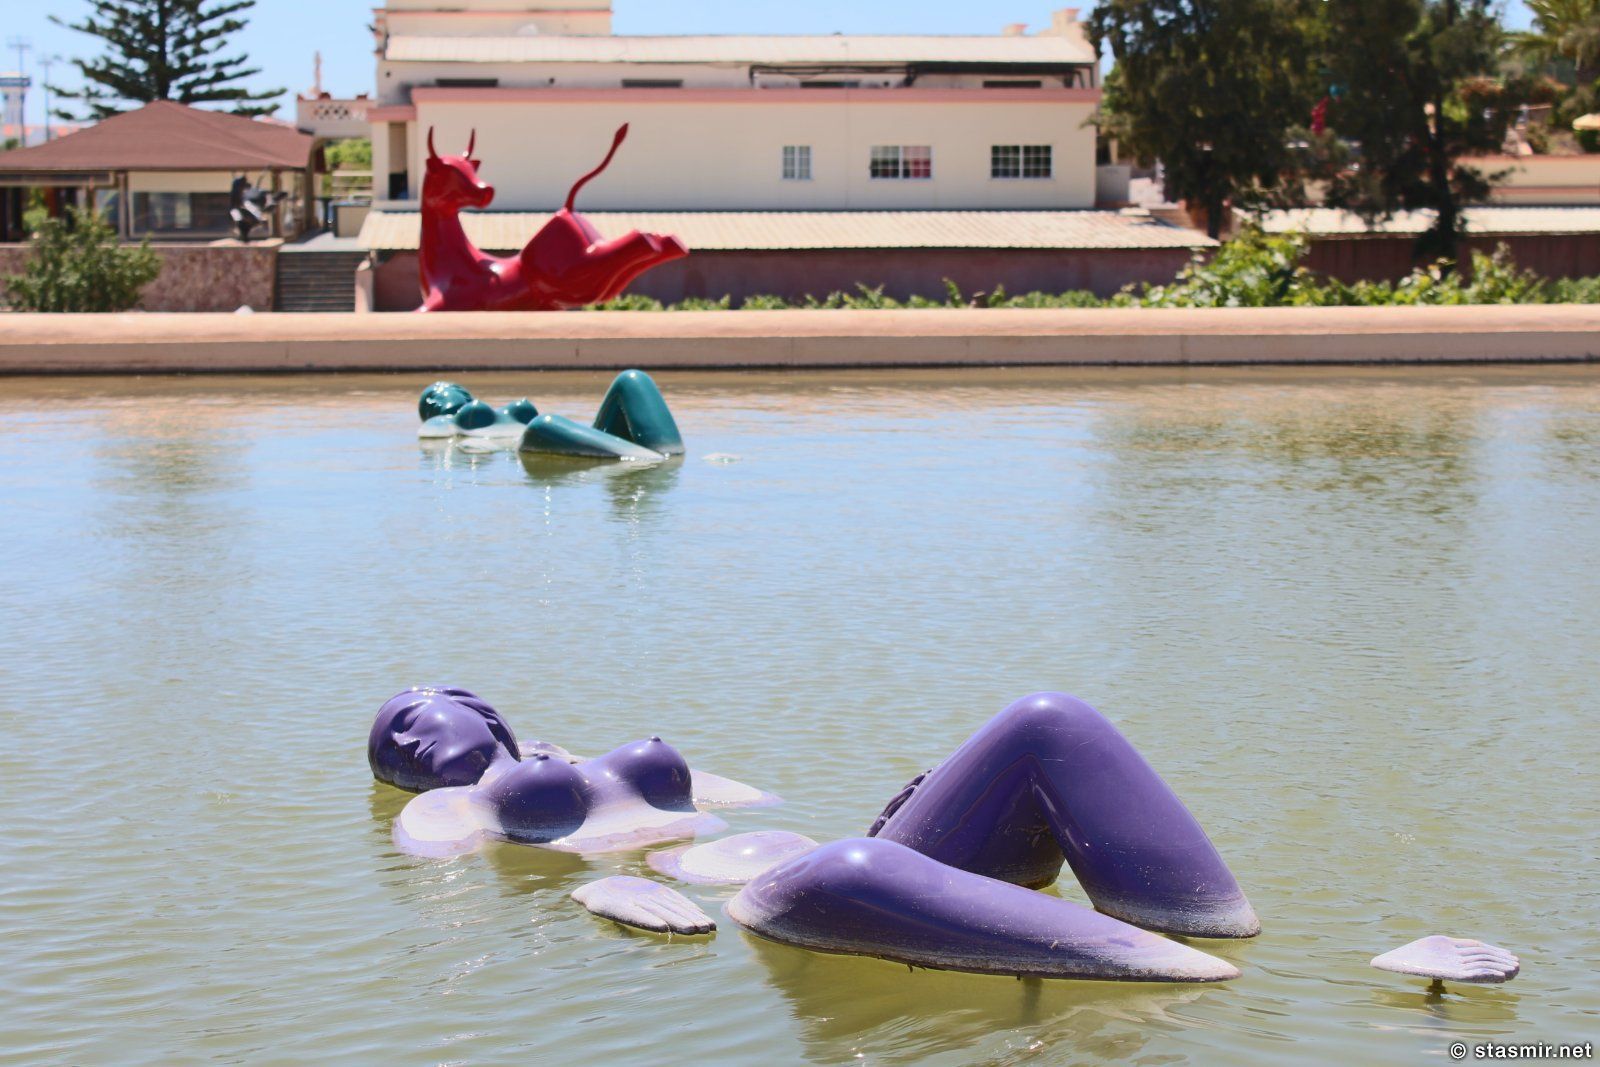 Скульптура плавающих тетенек на винограднике в Португалии, фото Стасмир, photo Stasmir